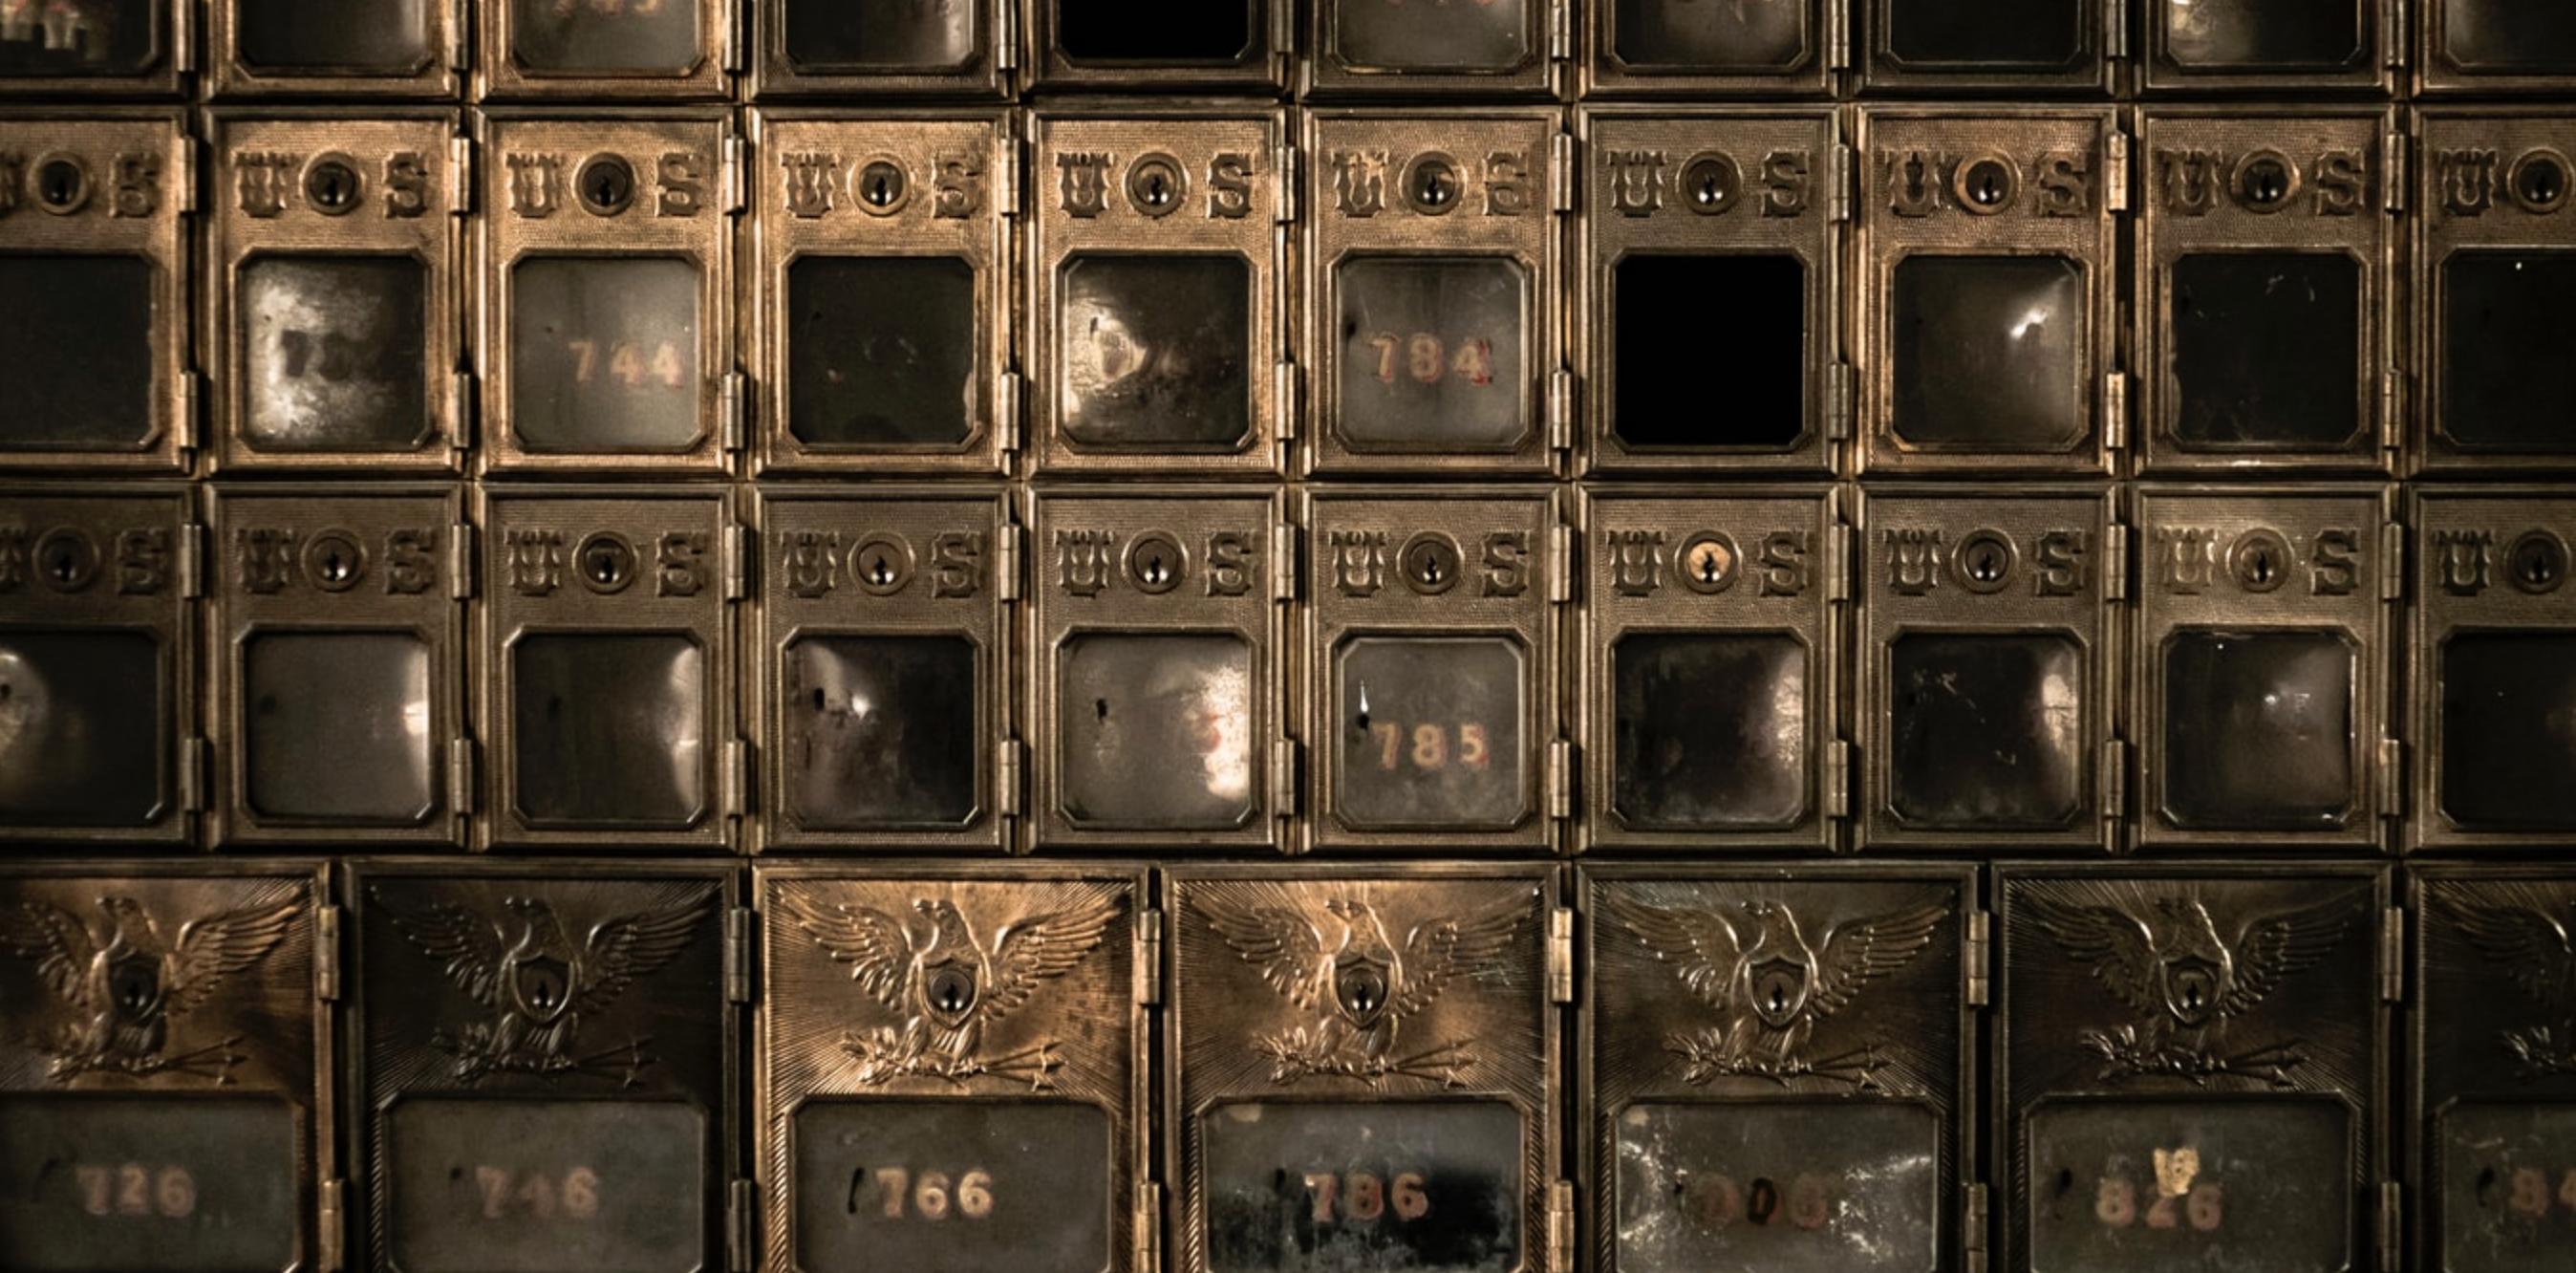 Vintage bronze mail boxes